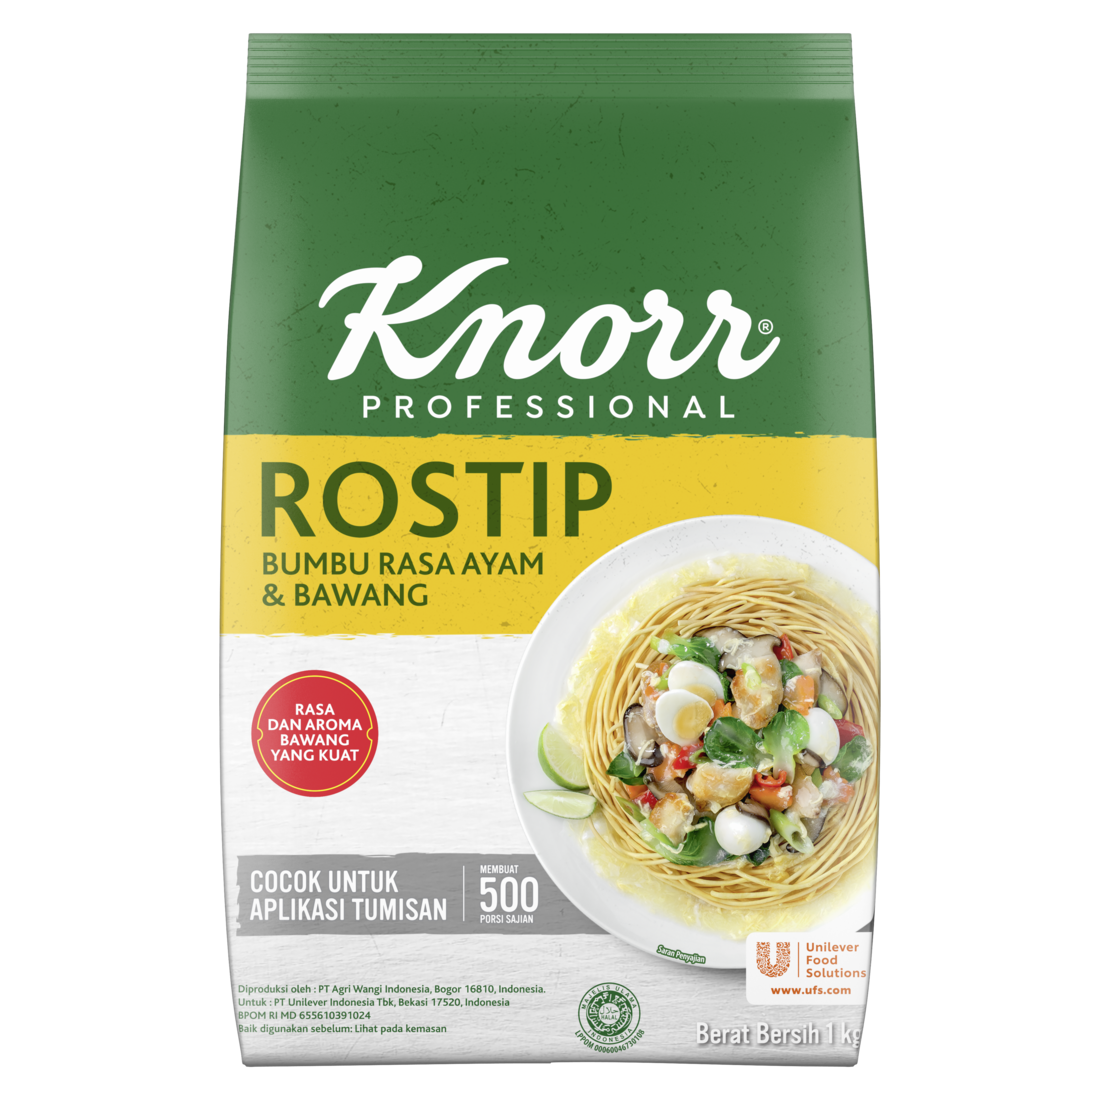 Knorr Bumbu Pelezat Rasa Ayam Rostip 1kg - Penyedap yang diperkaya bawang putih & lada asli untuk aroma rasa tumisan terbaik.